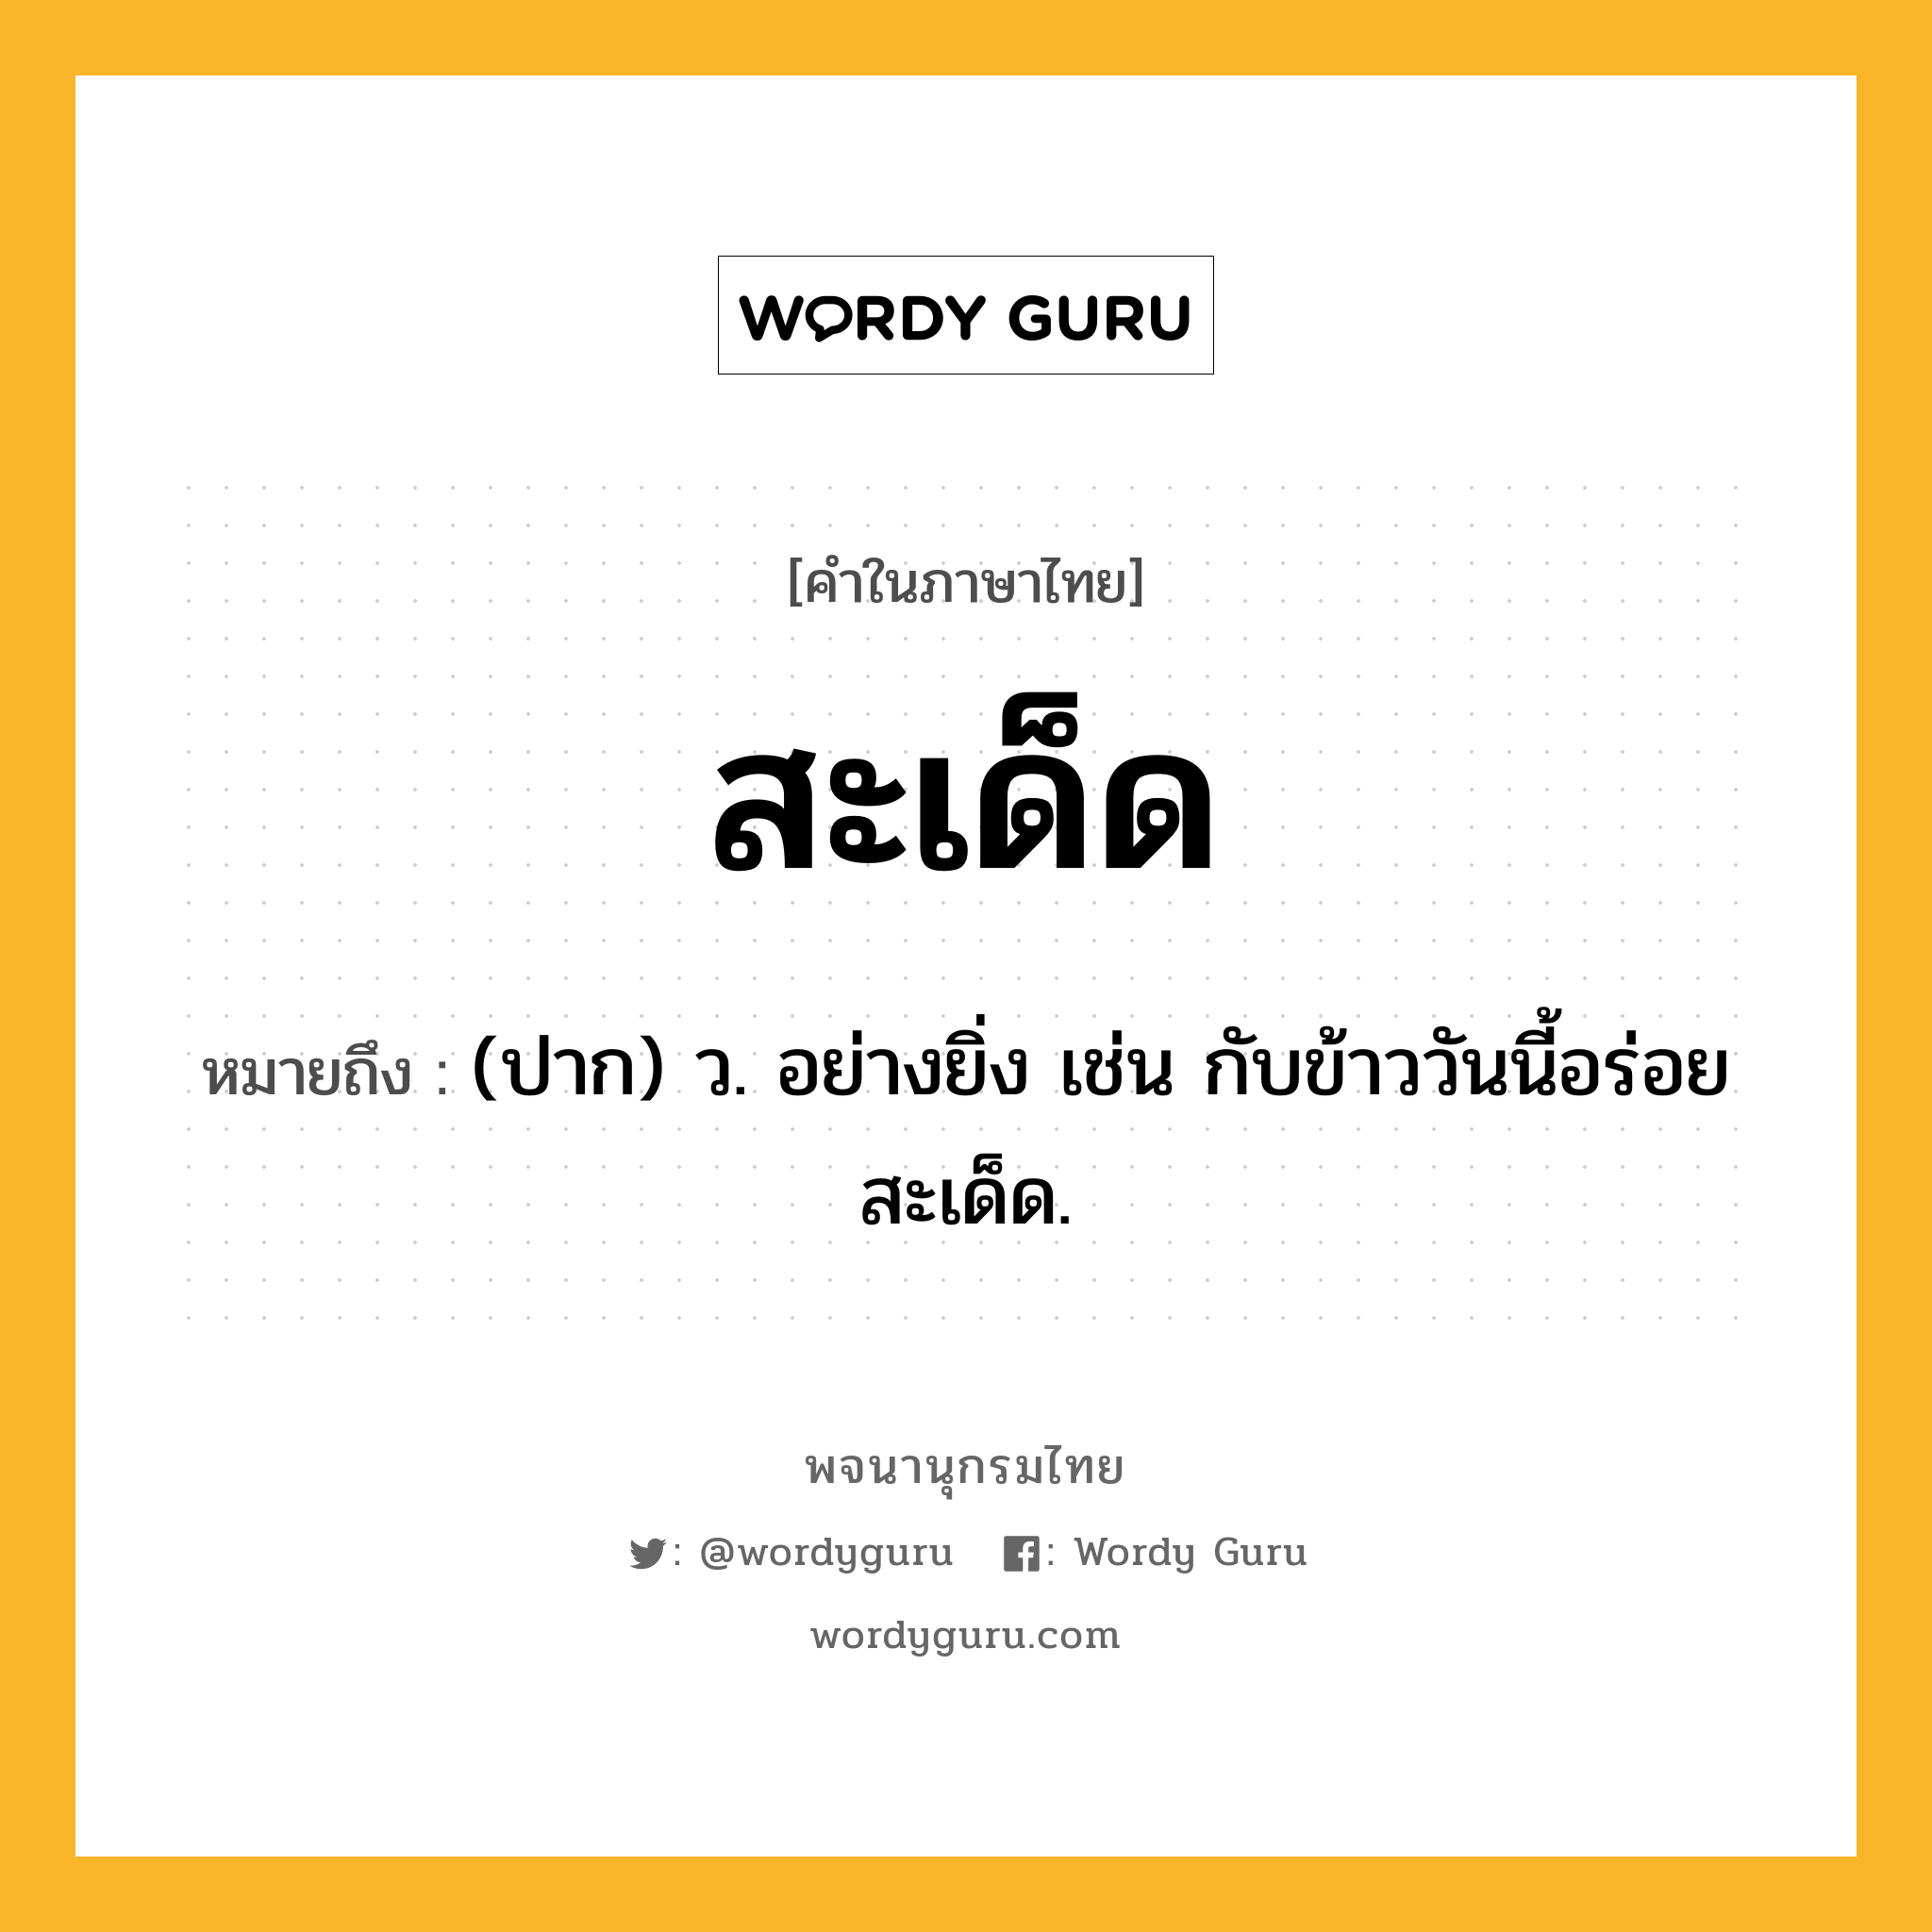 สะเด็ด ความหมาย หมายถึงอะไร?, คำในภาษาไทย สะเด็ด หมายถึง (ปาก) ว. อย่างยิ่ง เช่น กับข้าววันนี้อร่อยสะเด็ด.